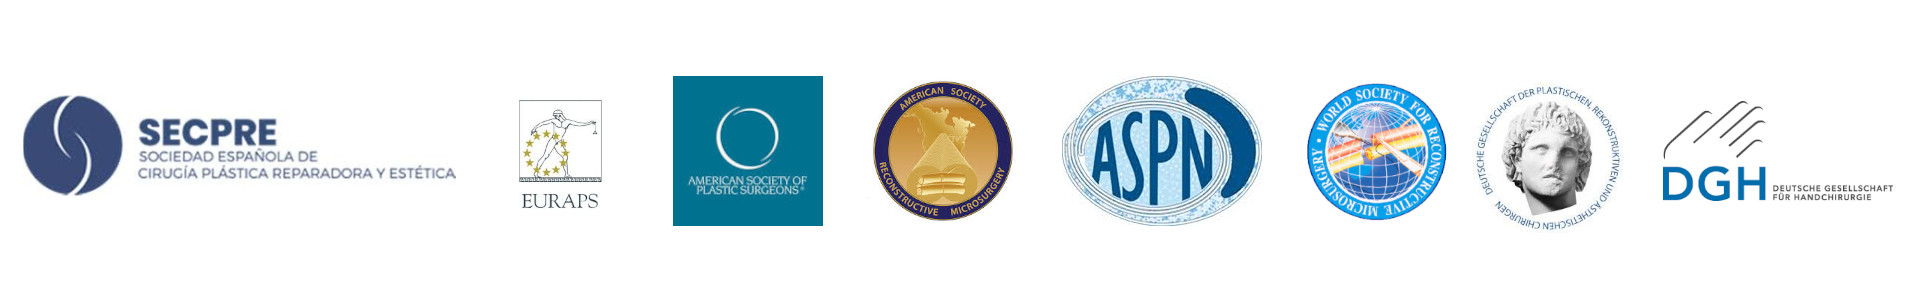 Logotipos de: SECPRE, EURAPS, ASPS, ASRM, ASPN, WSRM y DGH.